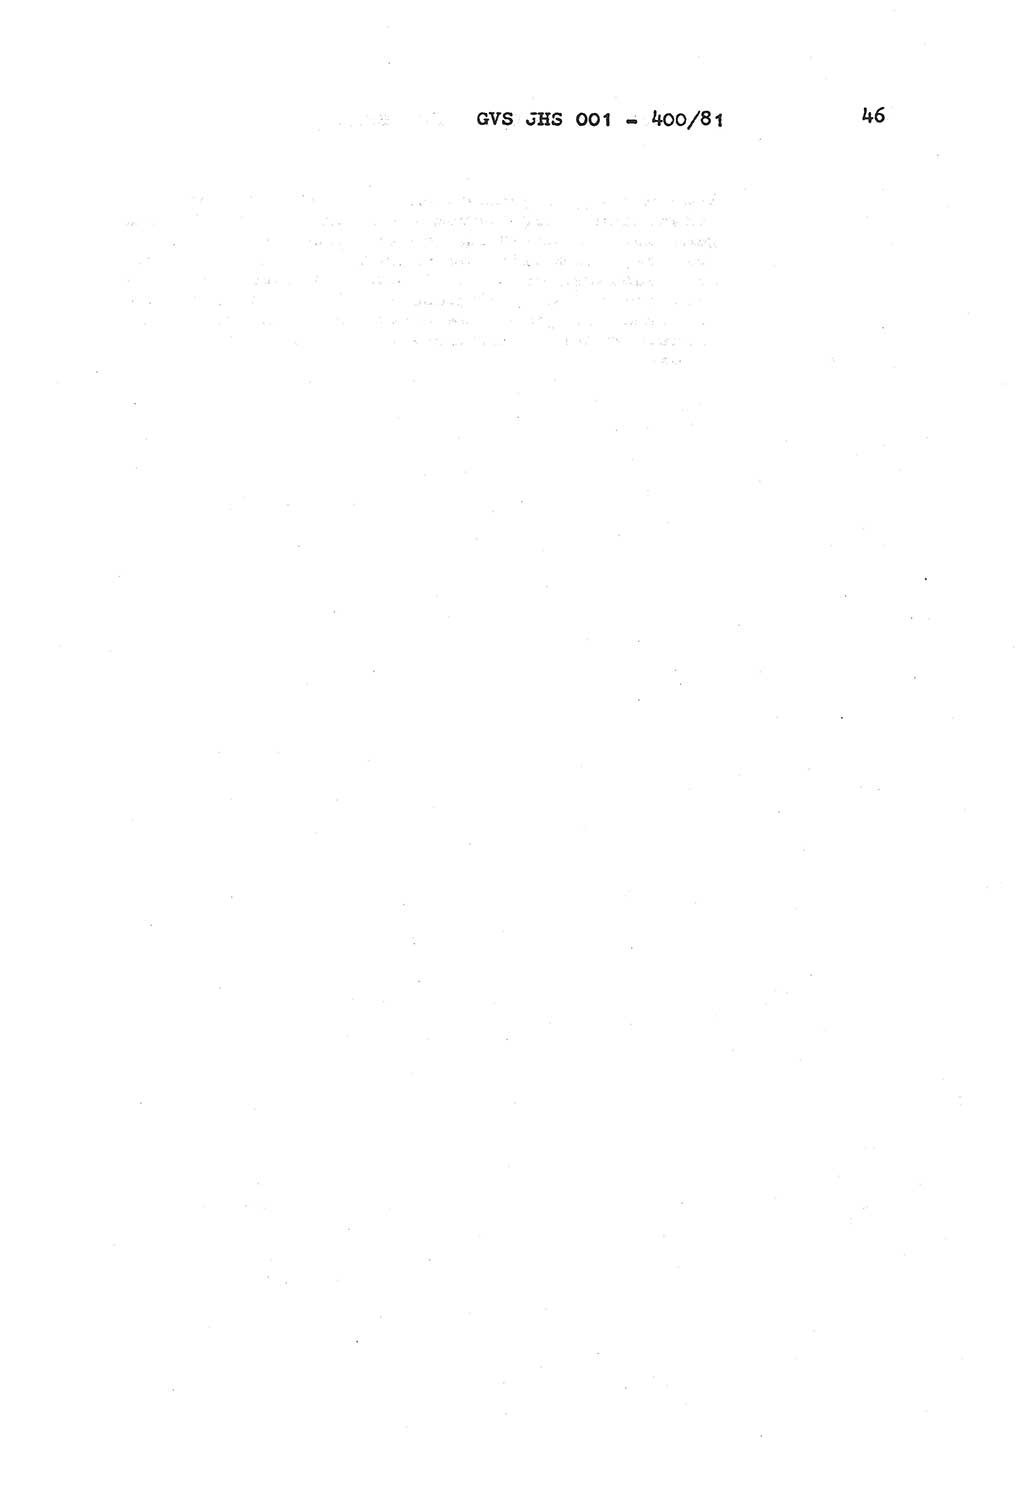 Wörterbuch der politisch-operativen Arbeit, Ministerium für Staatssicherheit (MfS) [Deutsche Demokratische Republik (DDR)], Juristische Hochschule (JHS), Geheime Verschlußsache (GVS) o001-400/81, Potsdam 1985, Blatt 46 (Wb. pol.-op. Arb. MfS DDR JHS GVS o001-400/81 1985, Bl. 46)